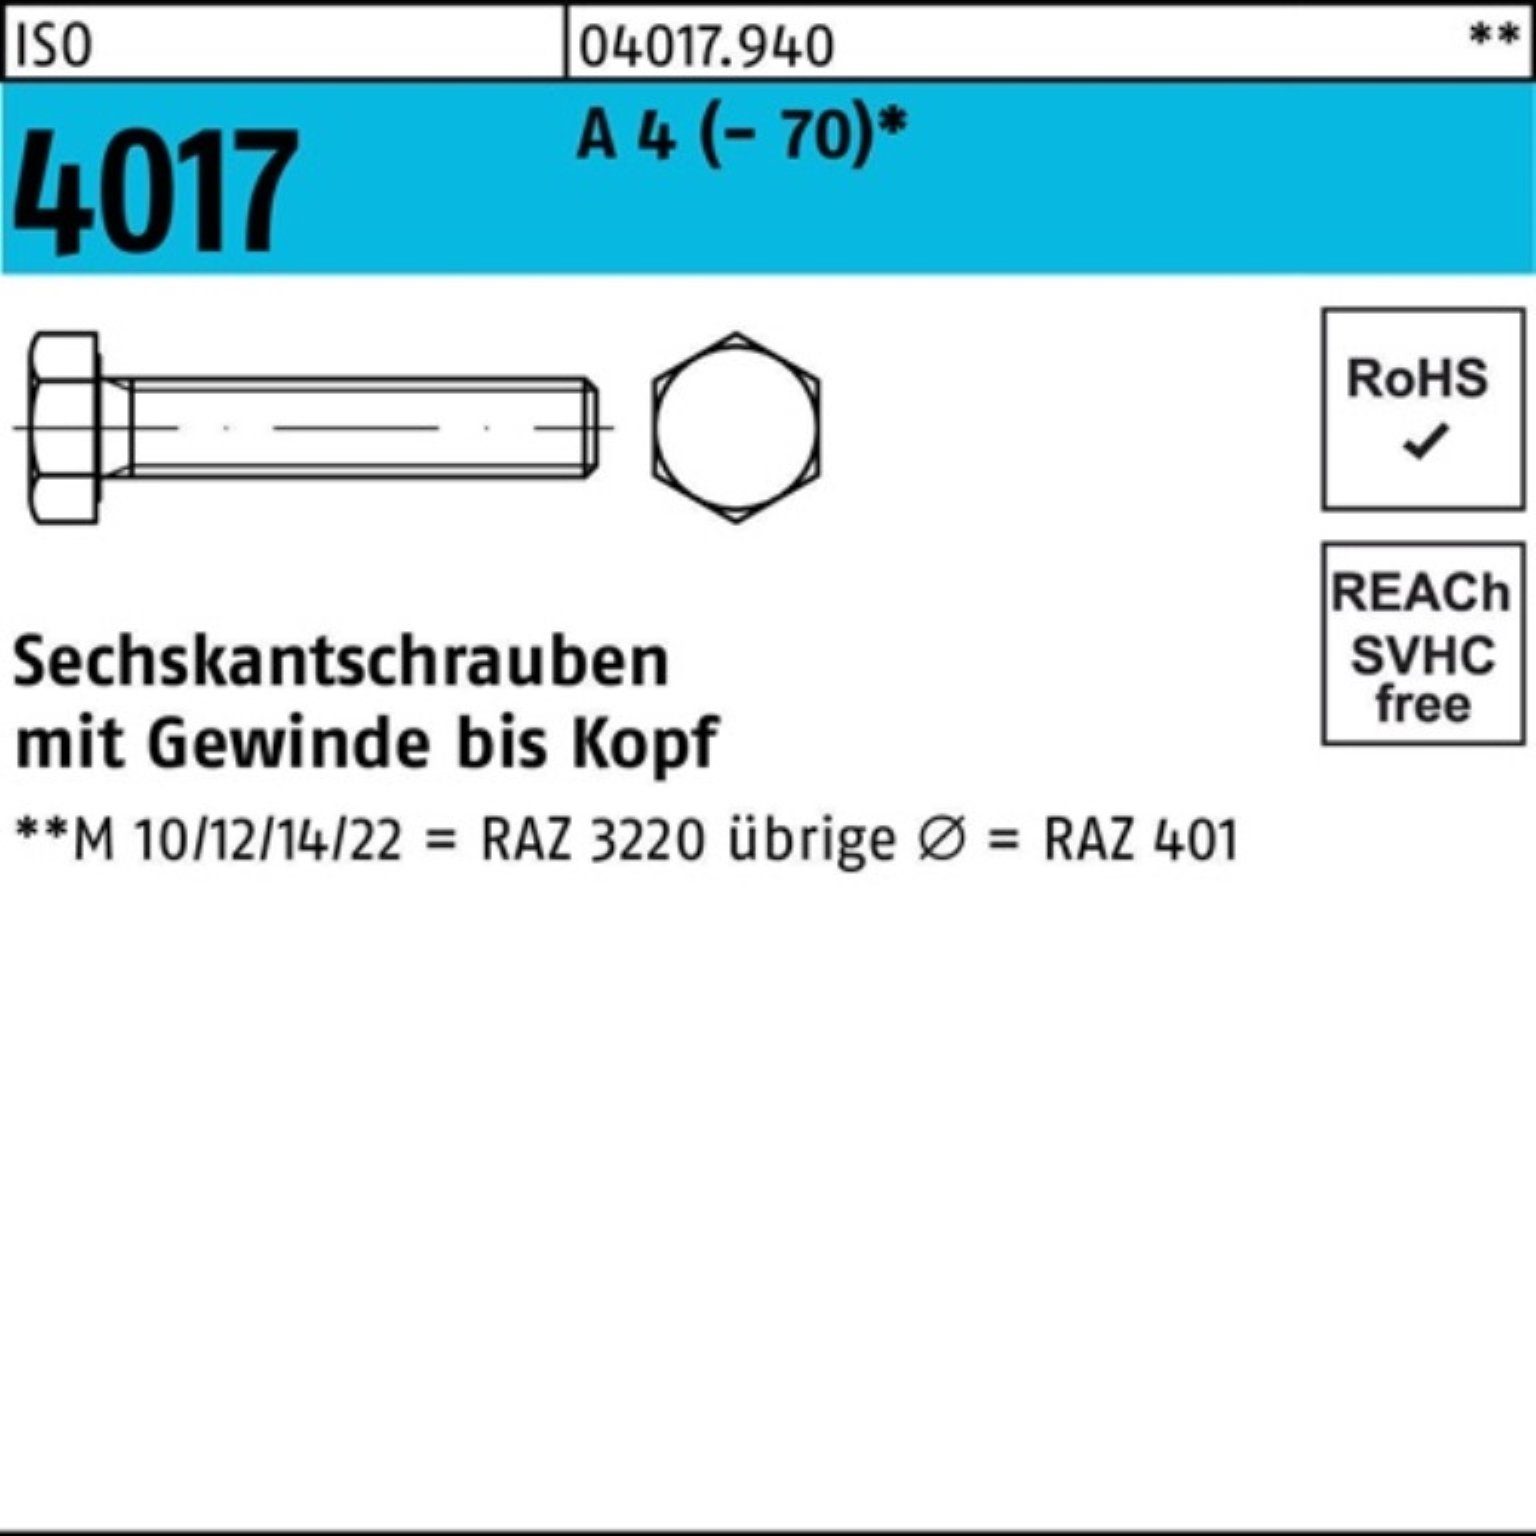 Bufab Sechskantschraube 100er Pack Sechskantschraube ISO 4017 VG M27x 80 A 4 (70) 1 Stück I